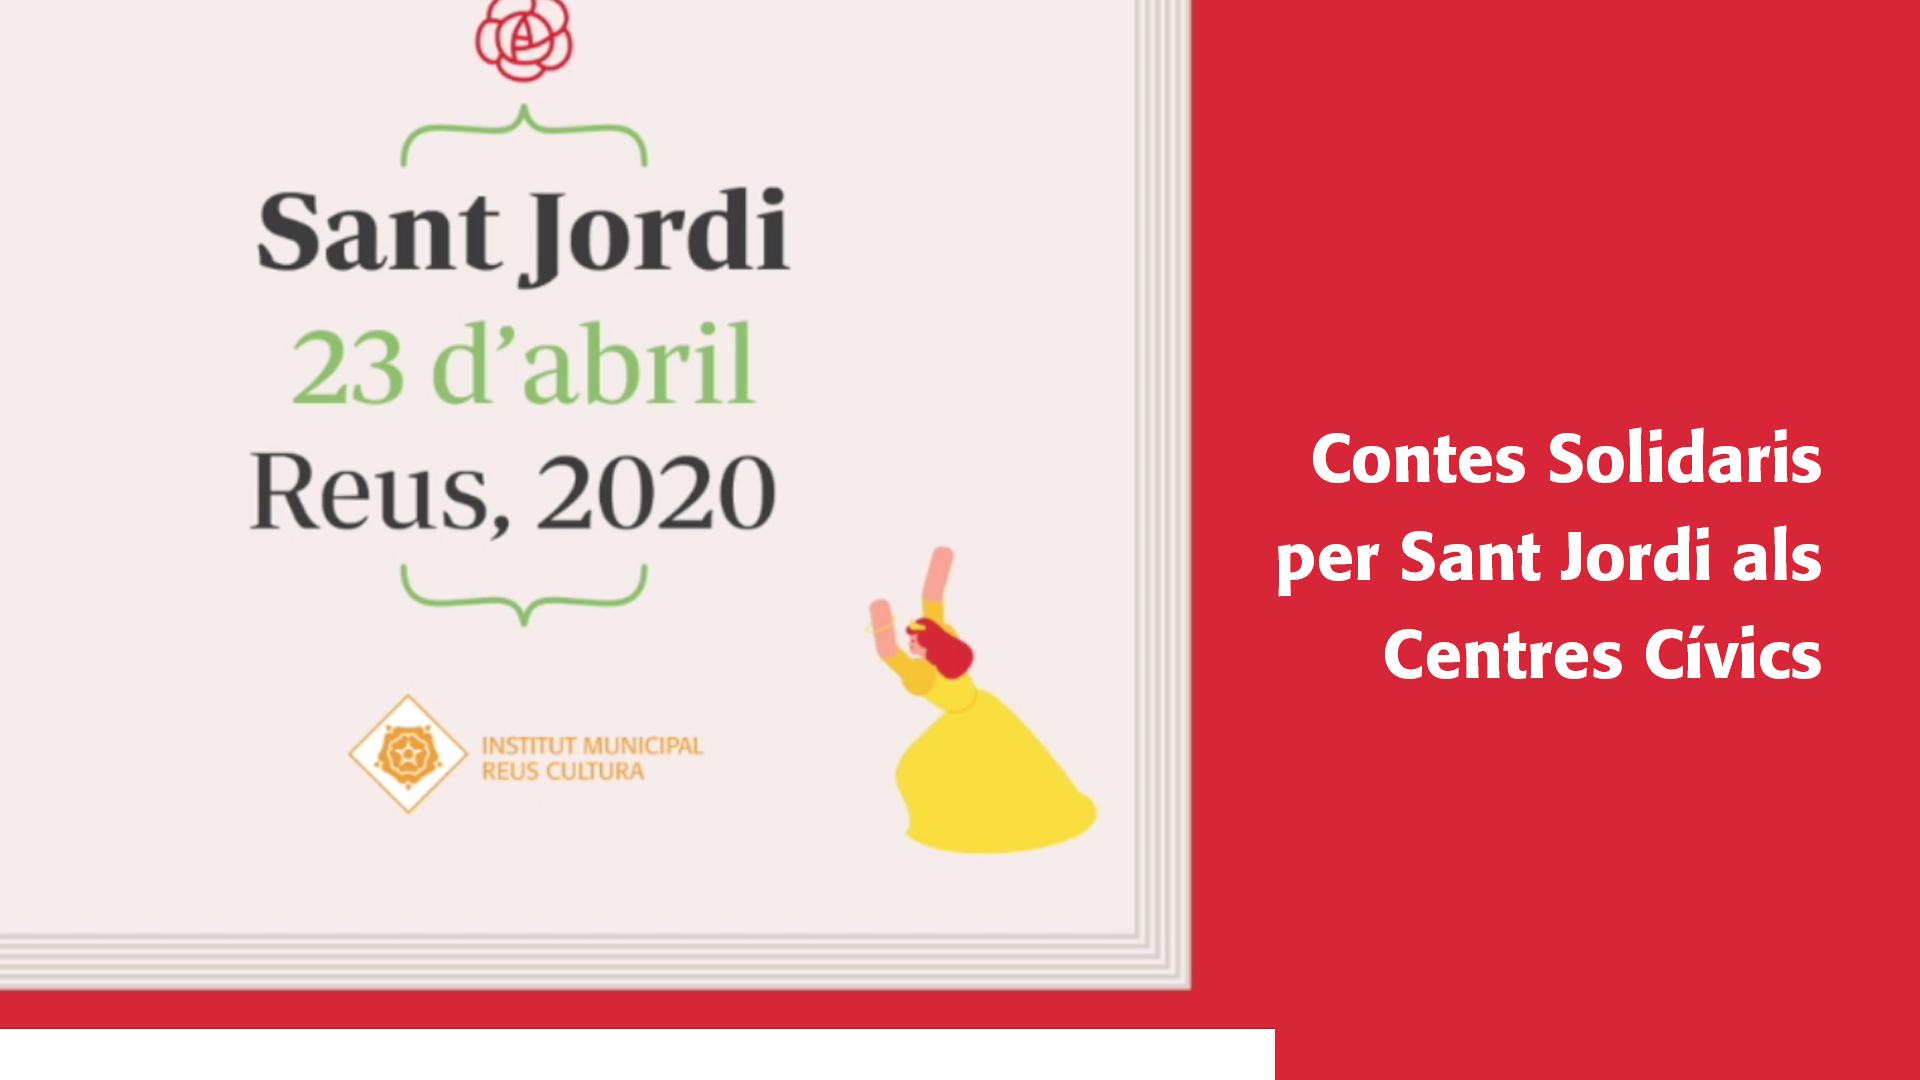 Sant Jordi: Contes Solidaris per Sant Jordi als Centres Cívics